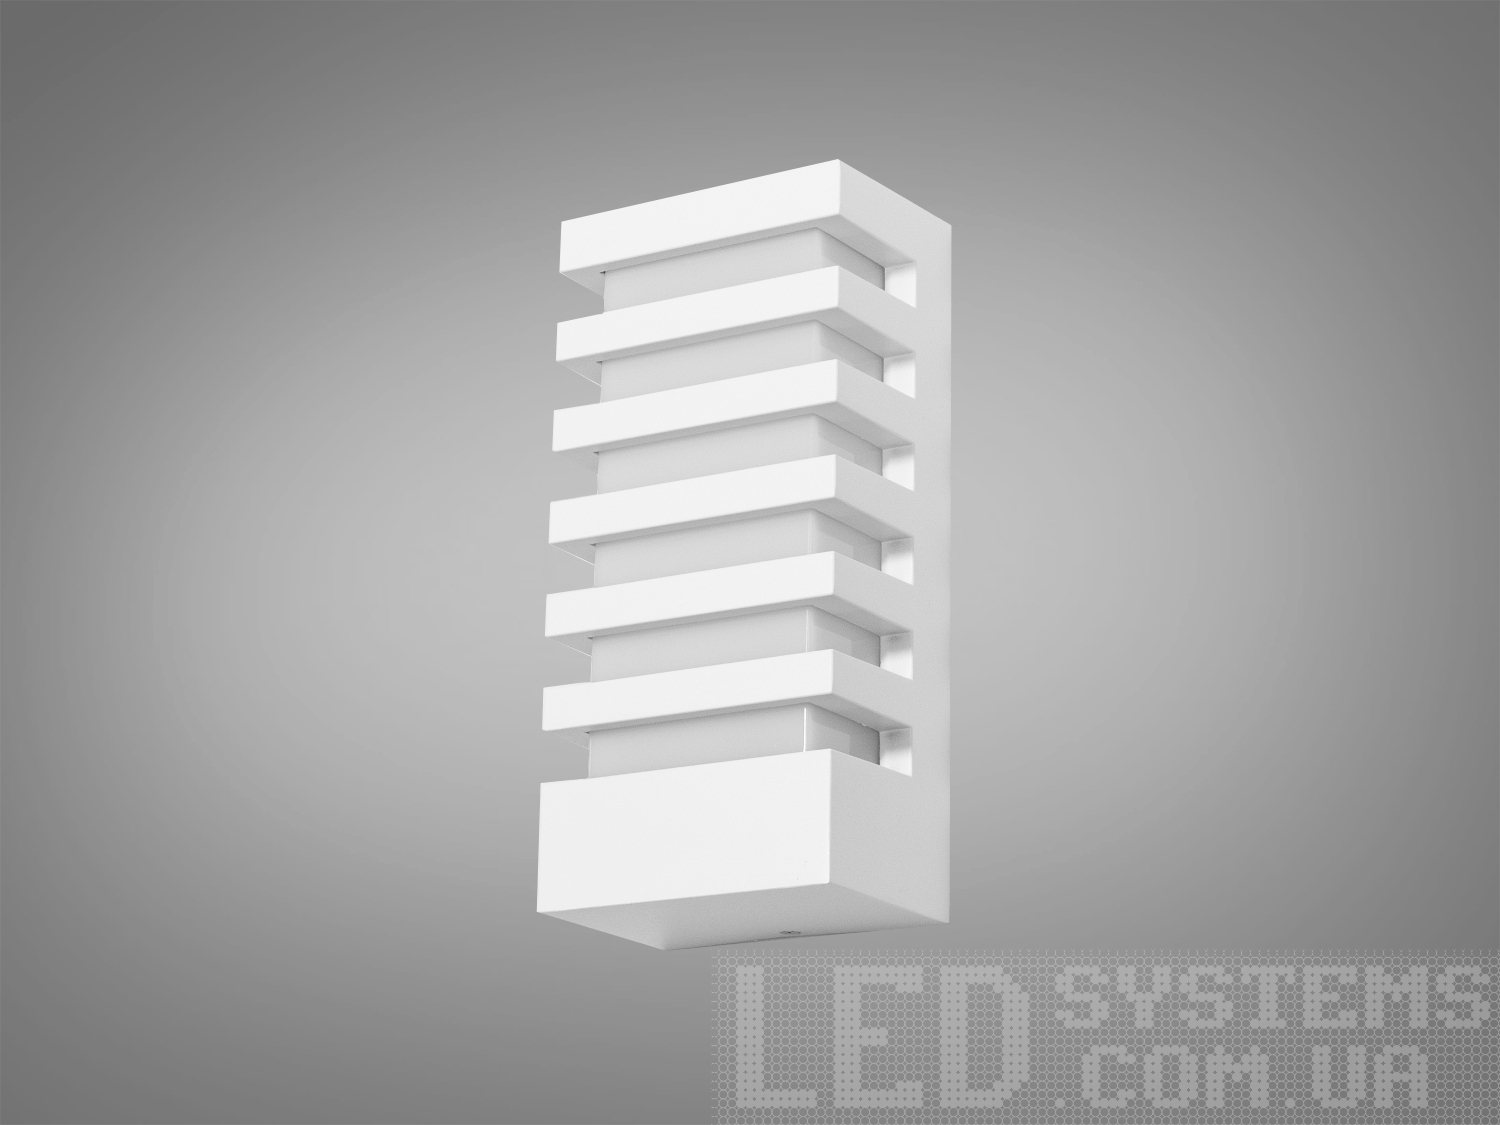 Архітектурне підсвічуванняФасадные светильники, LED светильники, уличные светильники, Архитектурная подсветка